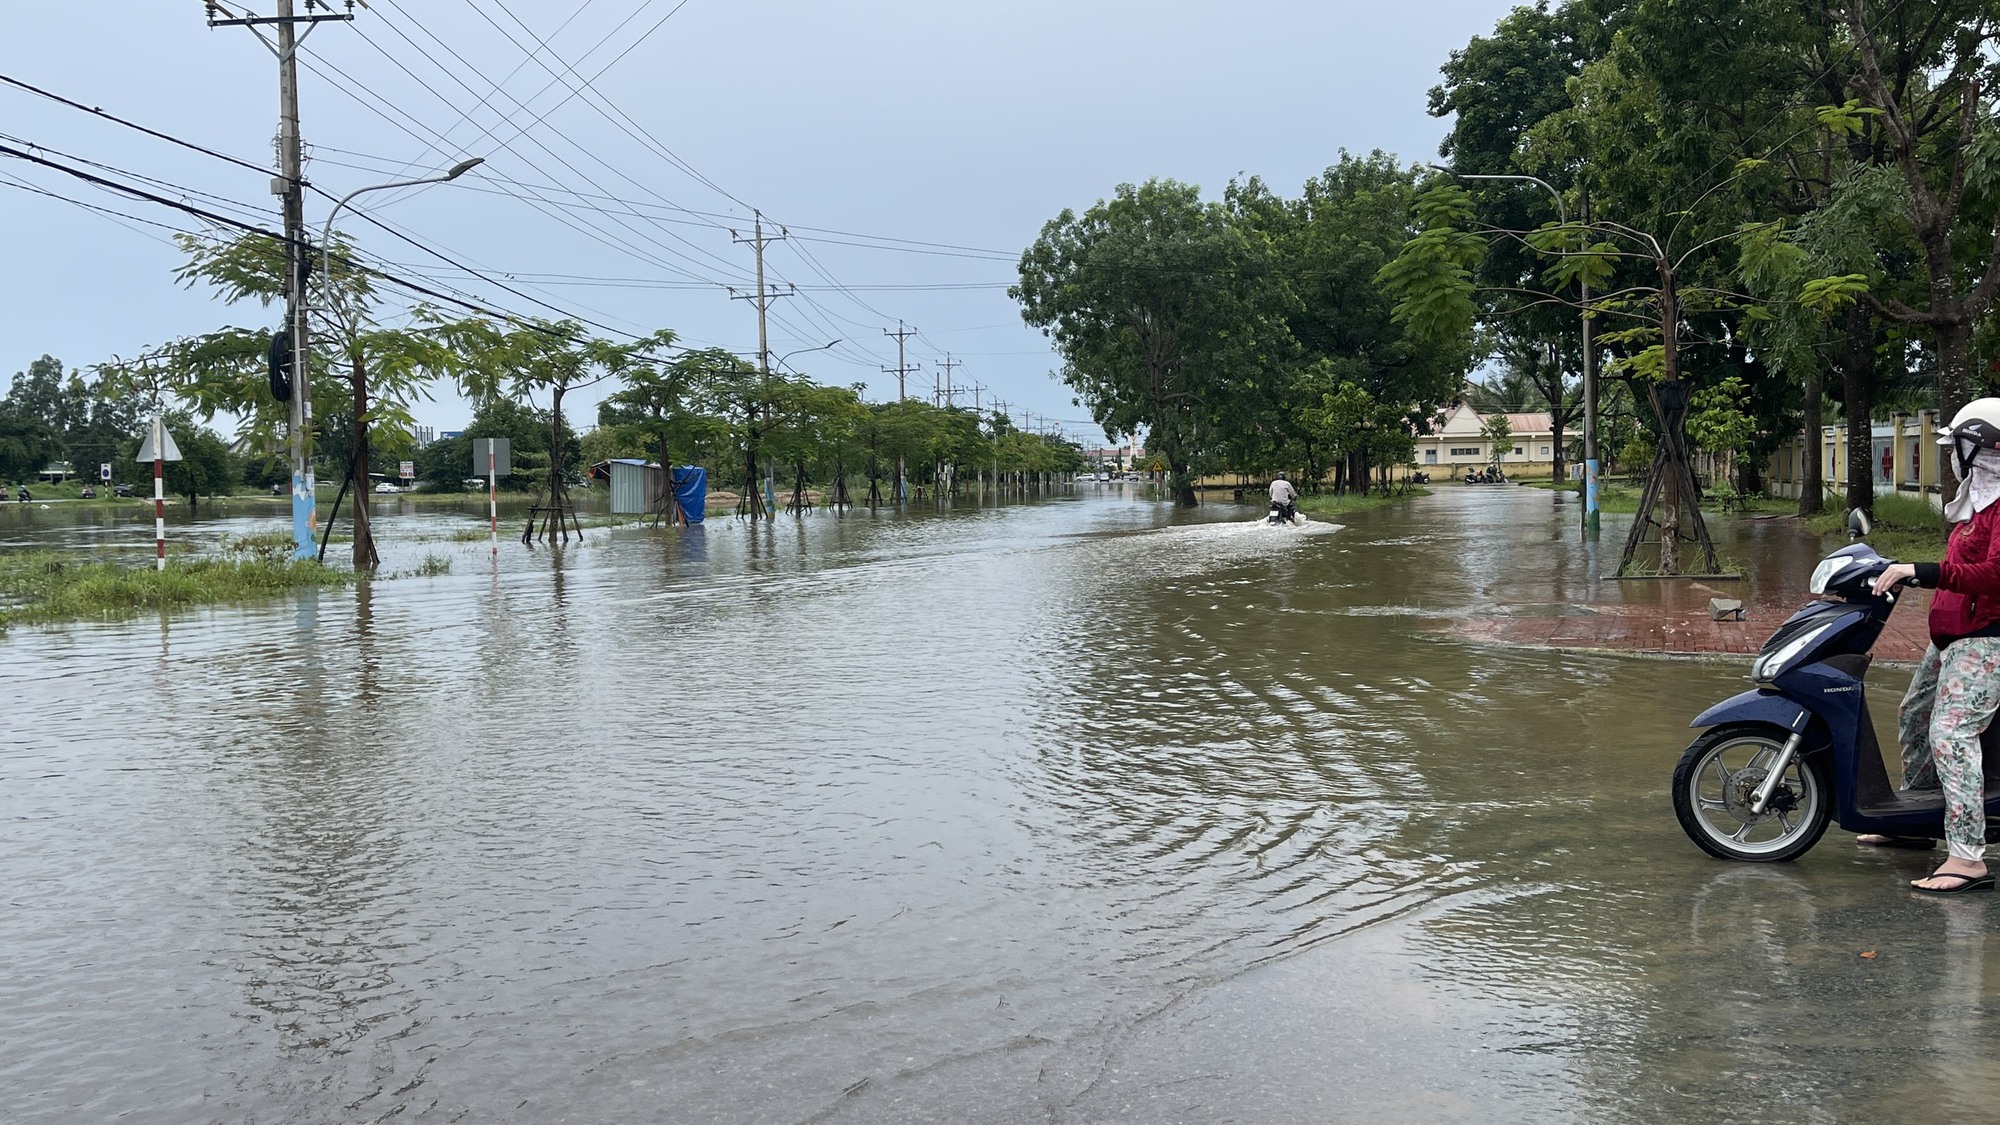 Bình Thuận: Gần 400 ha thanh long và nhiều căn nhà bị ngập vì mưa lũ - Ảnh 2.